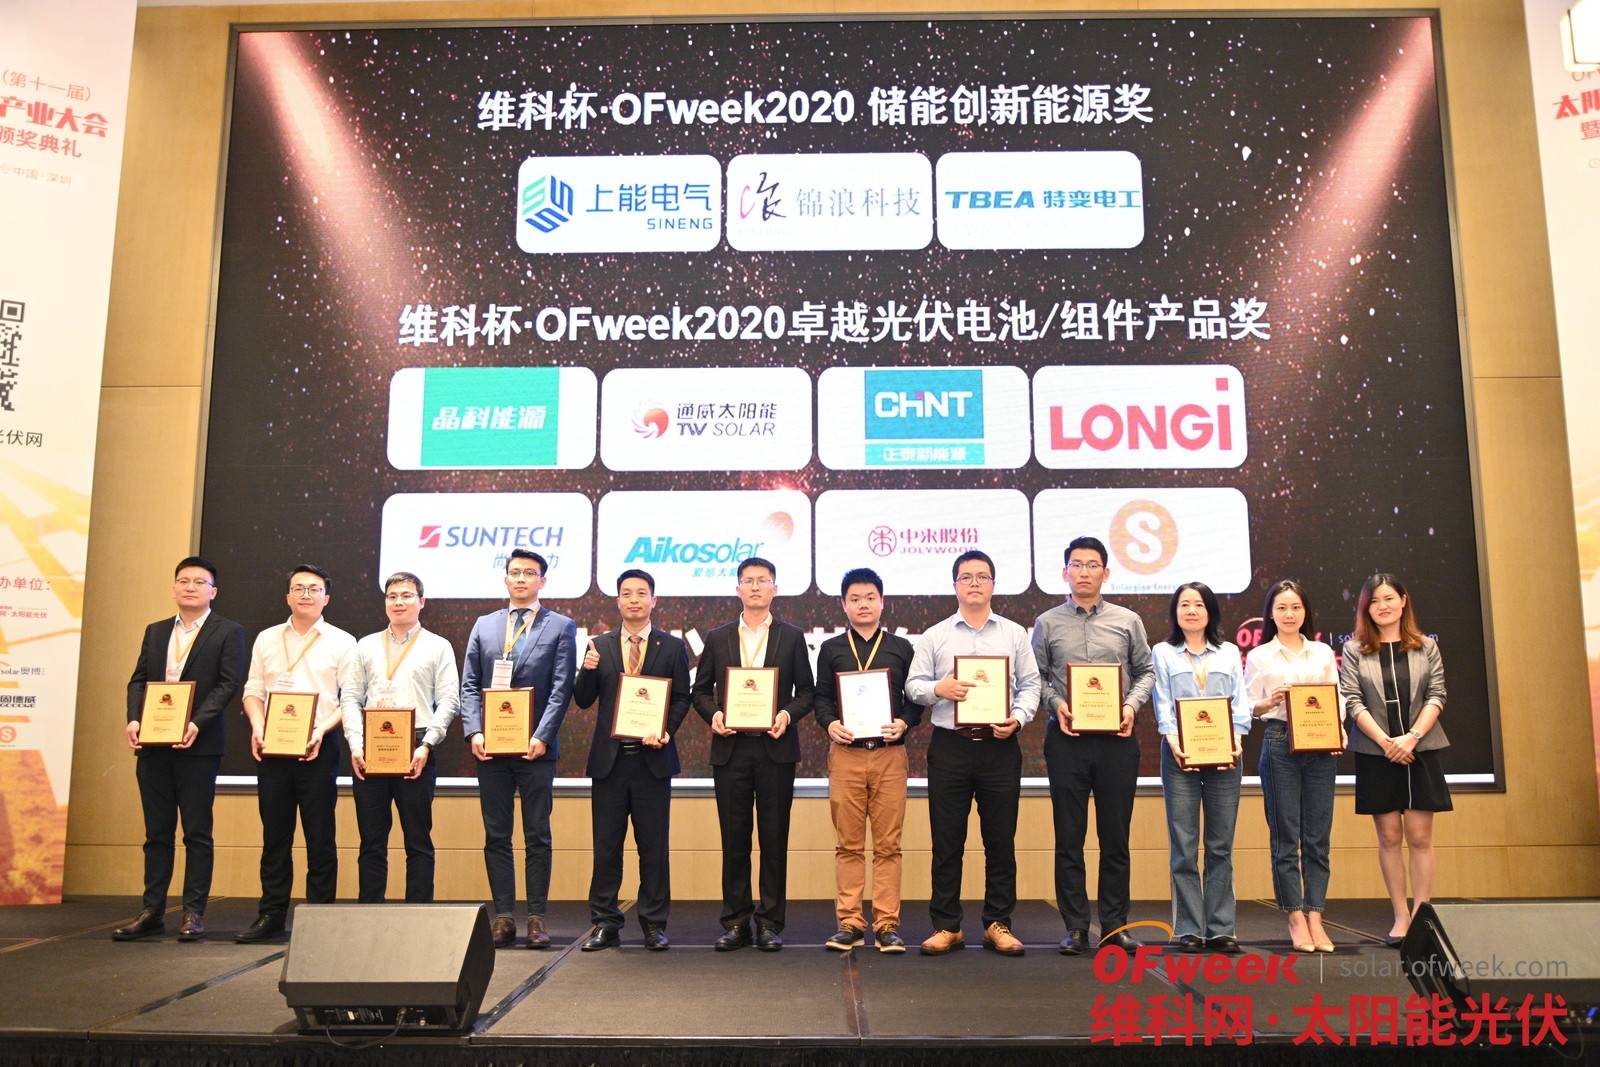 锦州阳光能源有限公司荣获维科杯·OFweek 2020卓越光伏电池/组件产品奖